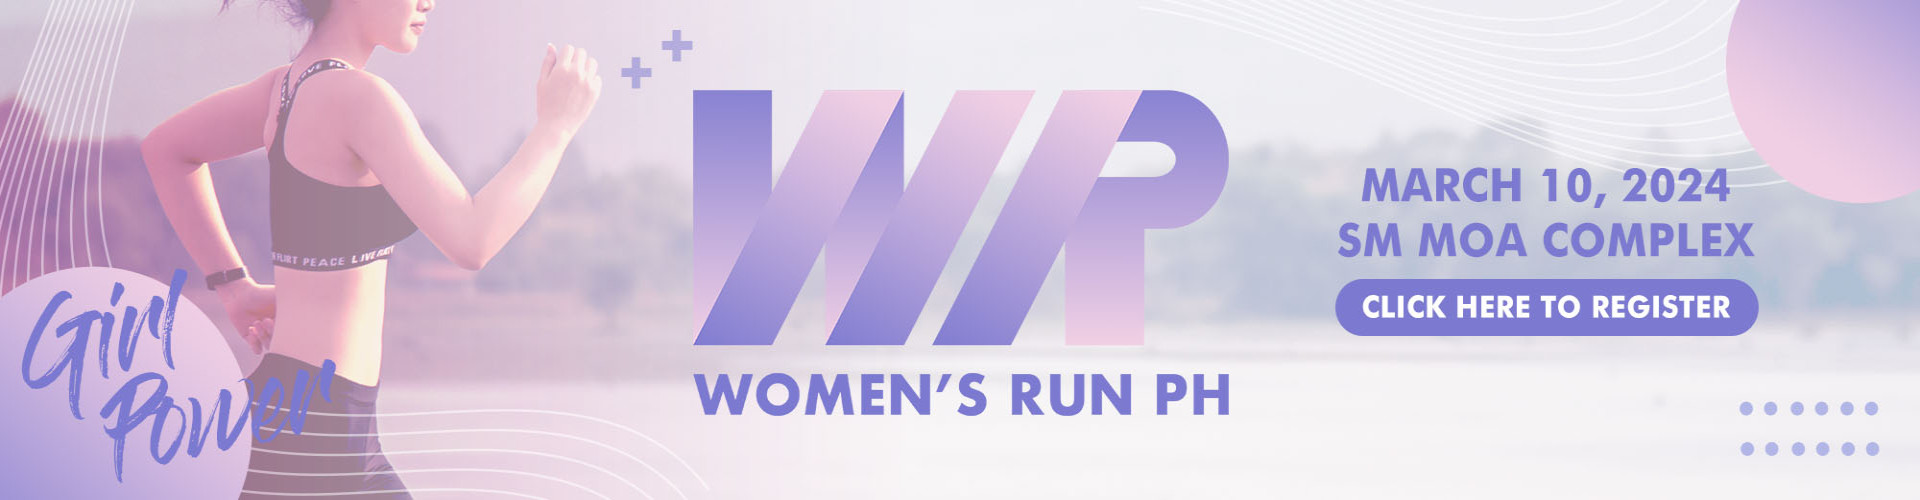 Women's Run PH 2024